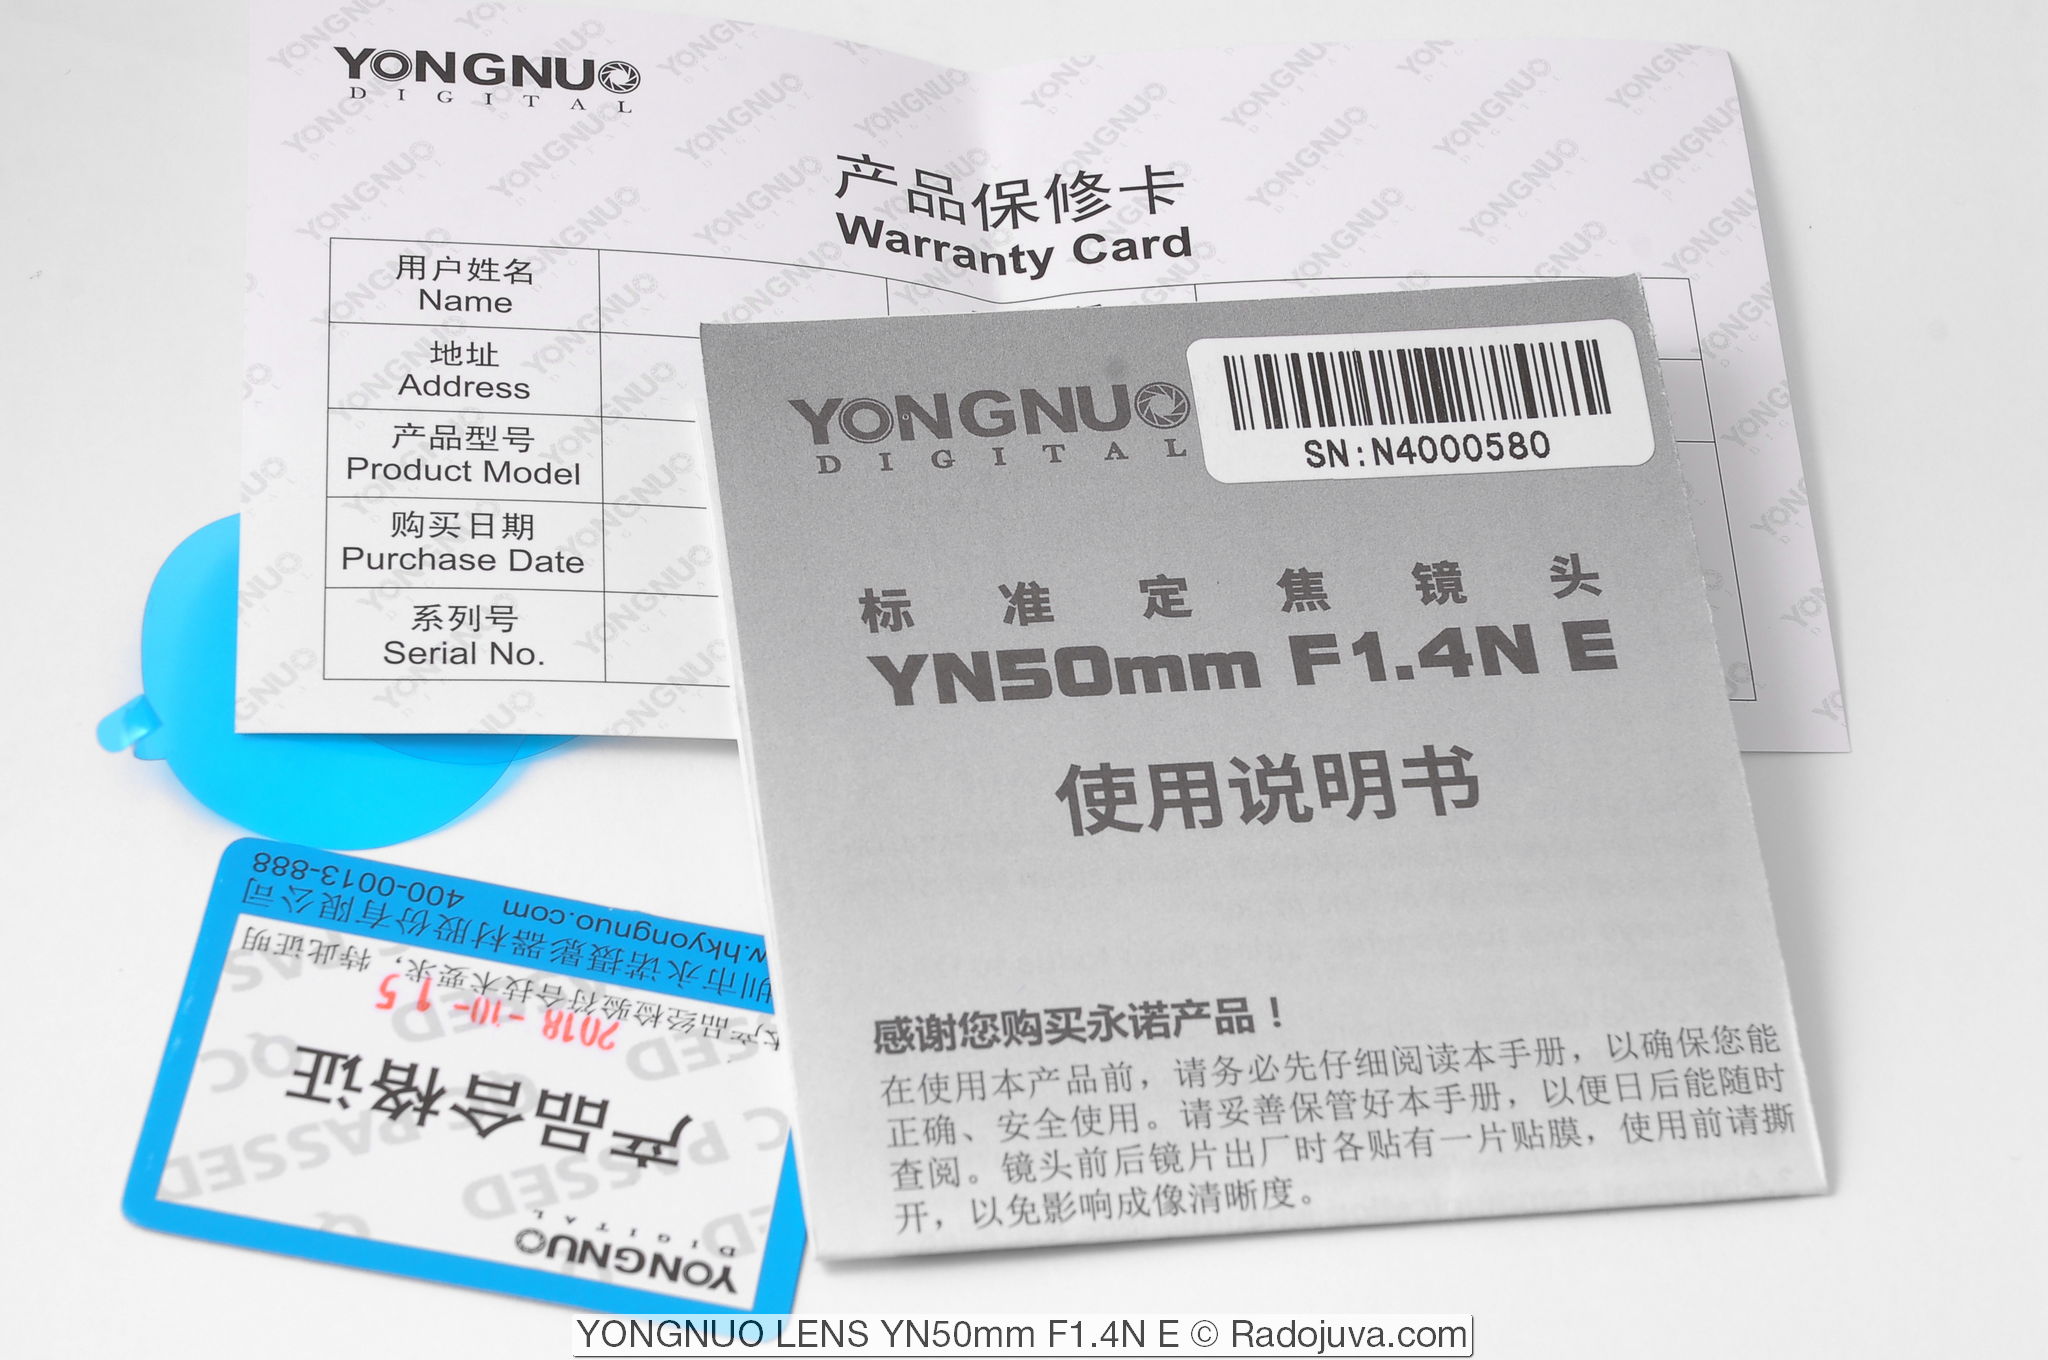 YONGNUO-LENS YN50mm F1.4N